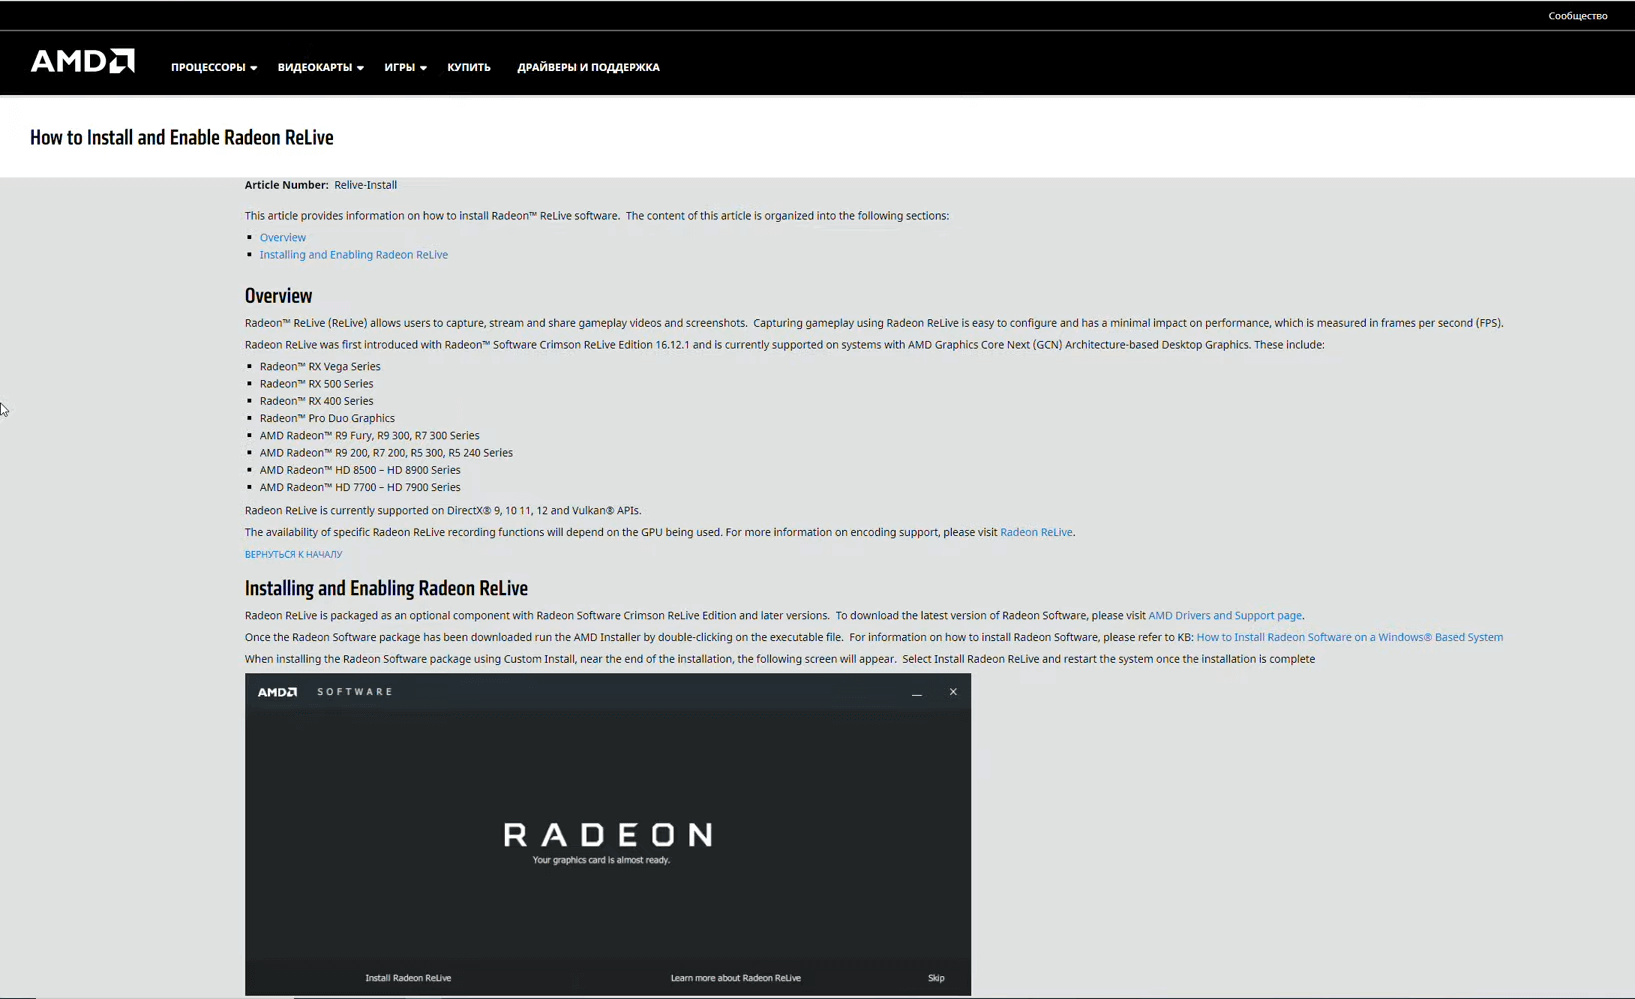 Съёмка в Radeon ReLive - хороший способ поделиться игрой в первозданном качестве